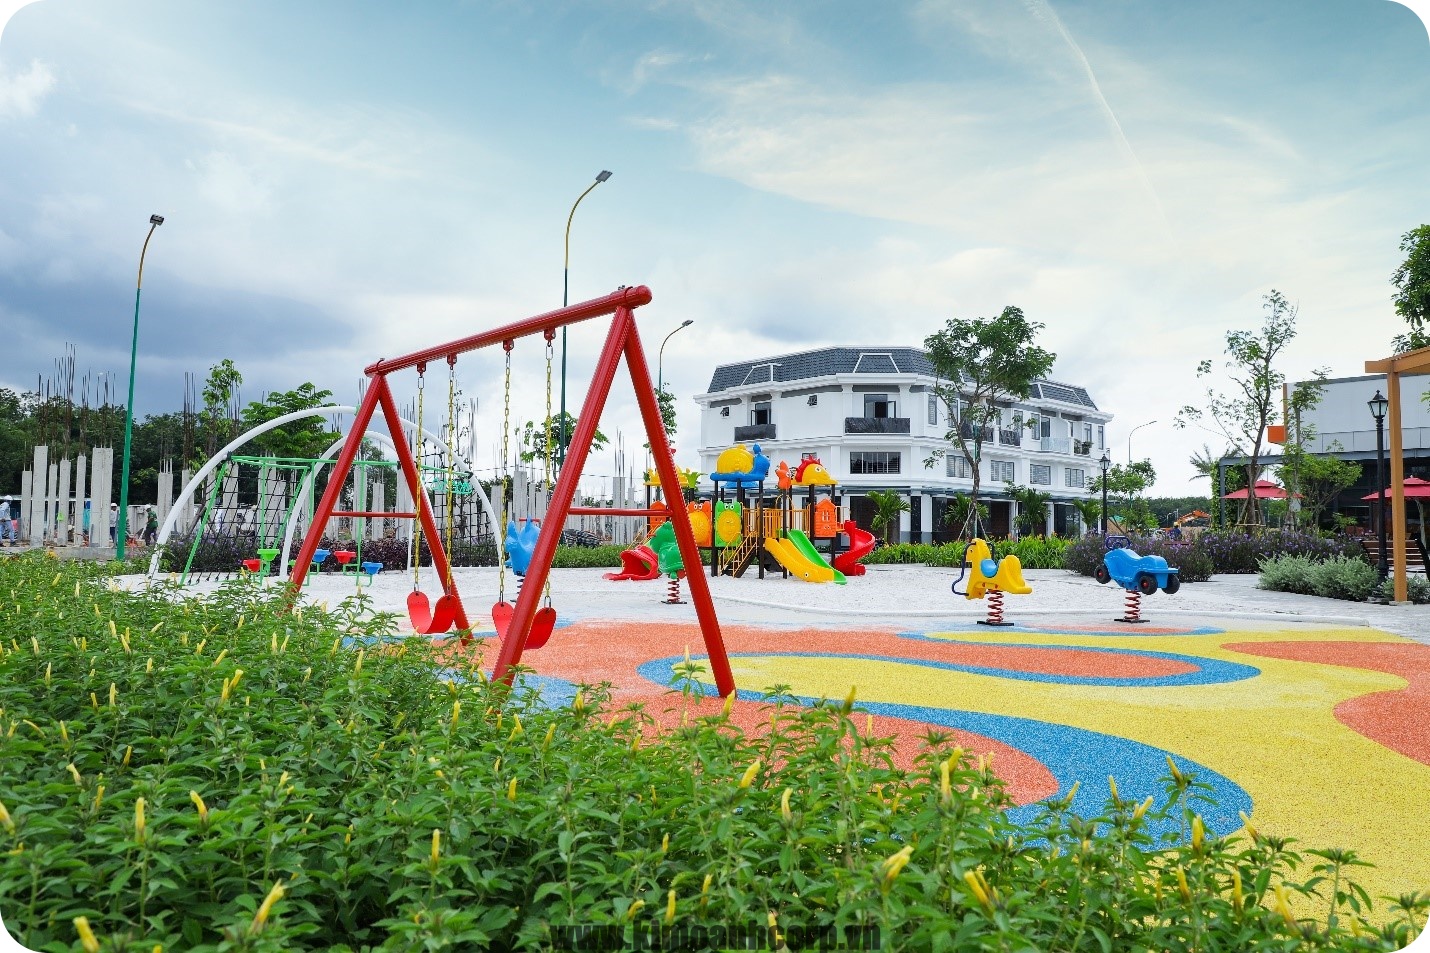 Dự án Richland Residence đã hoàn thiện hầu hết hạ tầng và tiện ích gồm công viên, khu vui chơi trẻ em, khu thể thao... đồng thời đã khởi công trường học trong nội khu